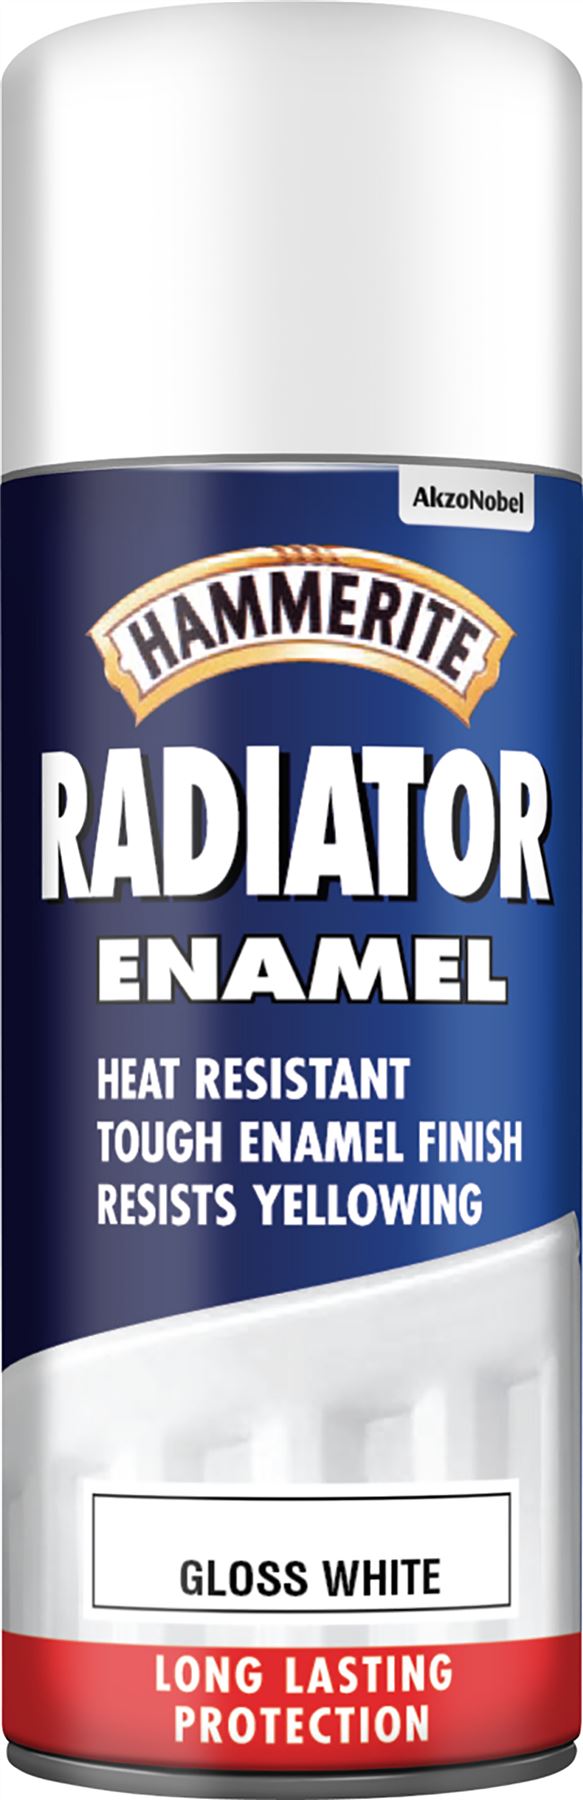 Hammerite Radiator Enamel Gloss White Aero Paint - 400ml